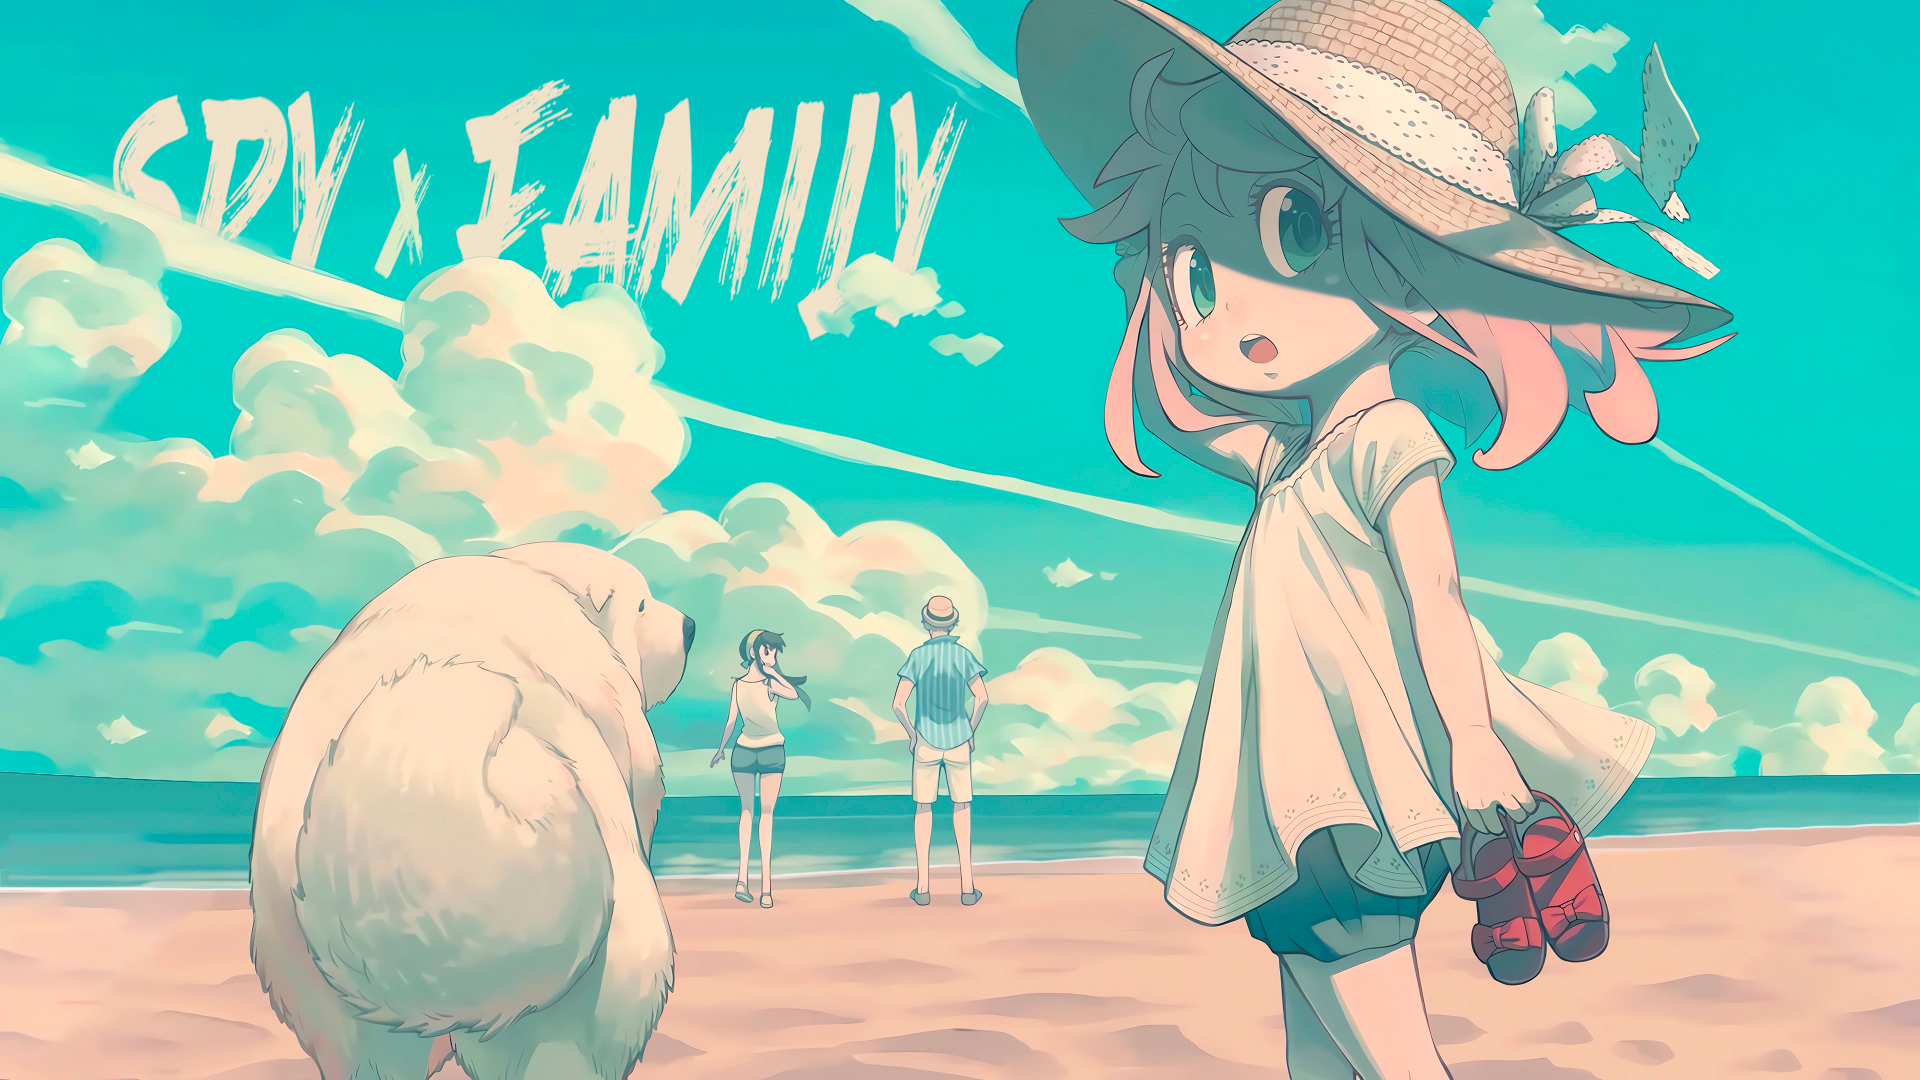 Anime 1920x1080 Spy x Family Anya Forger Yor Forger Loid Forger Bond Forger clouds beach anime girls anime boys sand water sky AI art